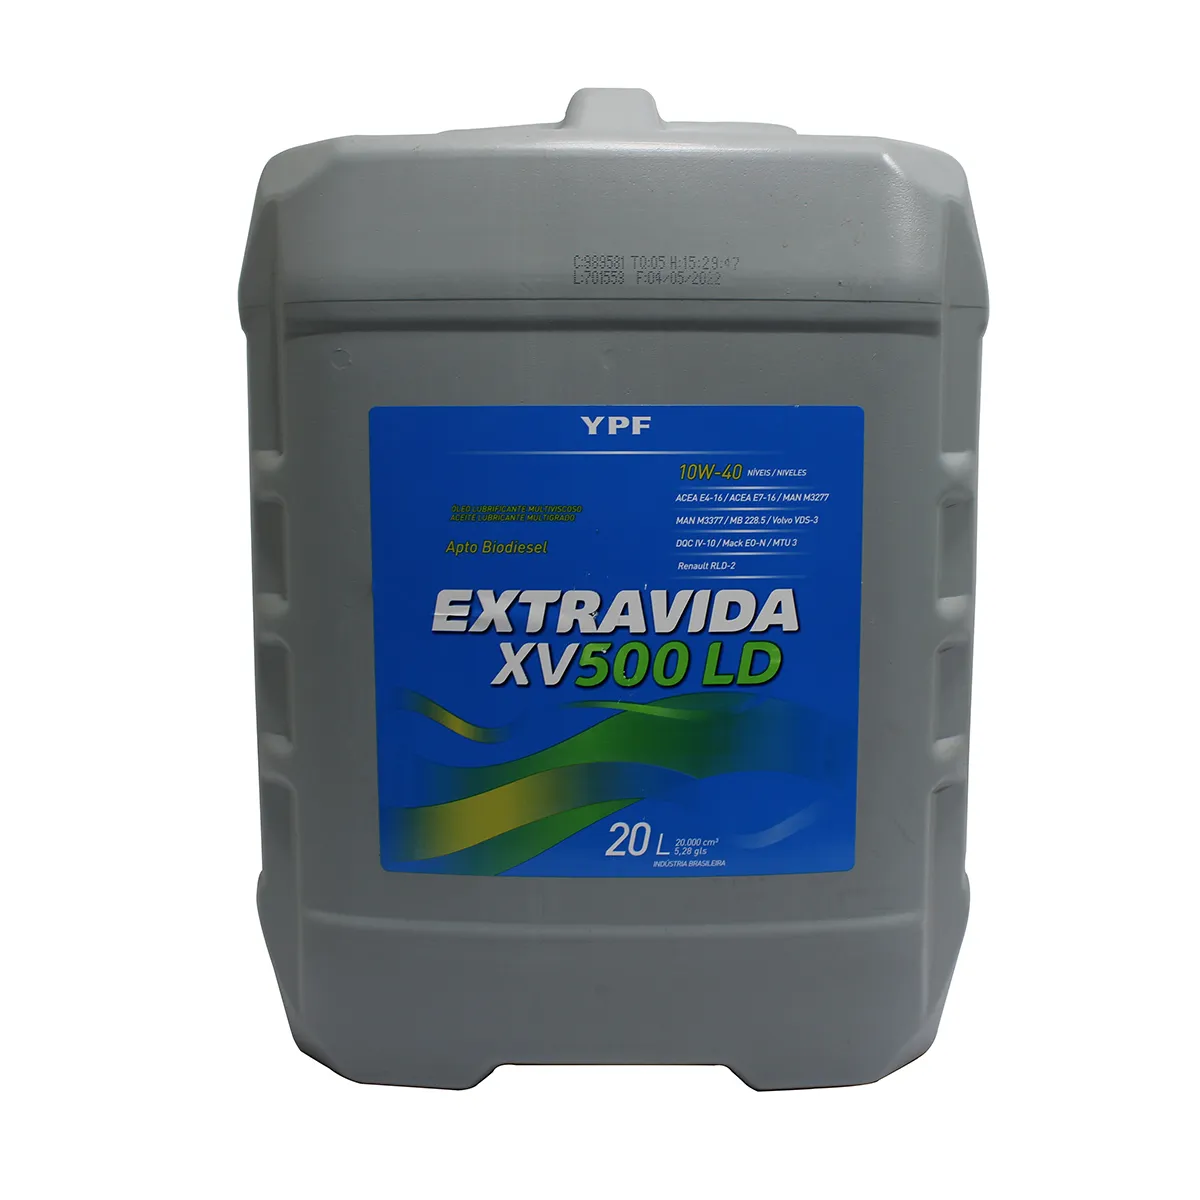 YPF EXTRAVIDA XV 500 LD 10W40 ACEA E4/E7 100% SINTETICO